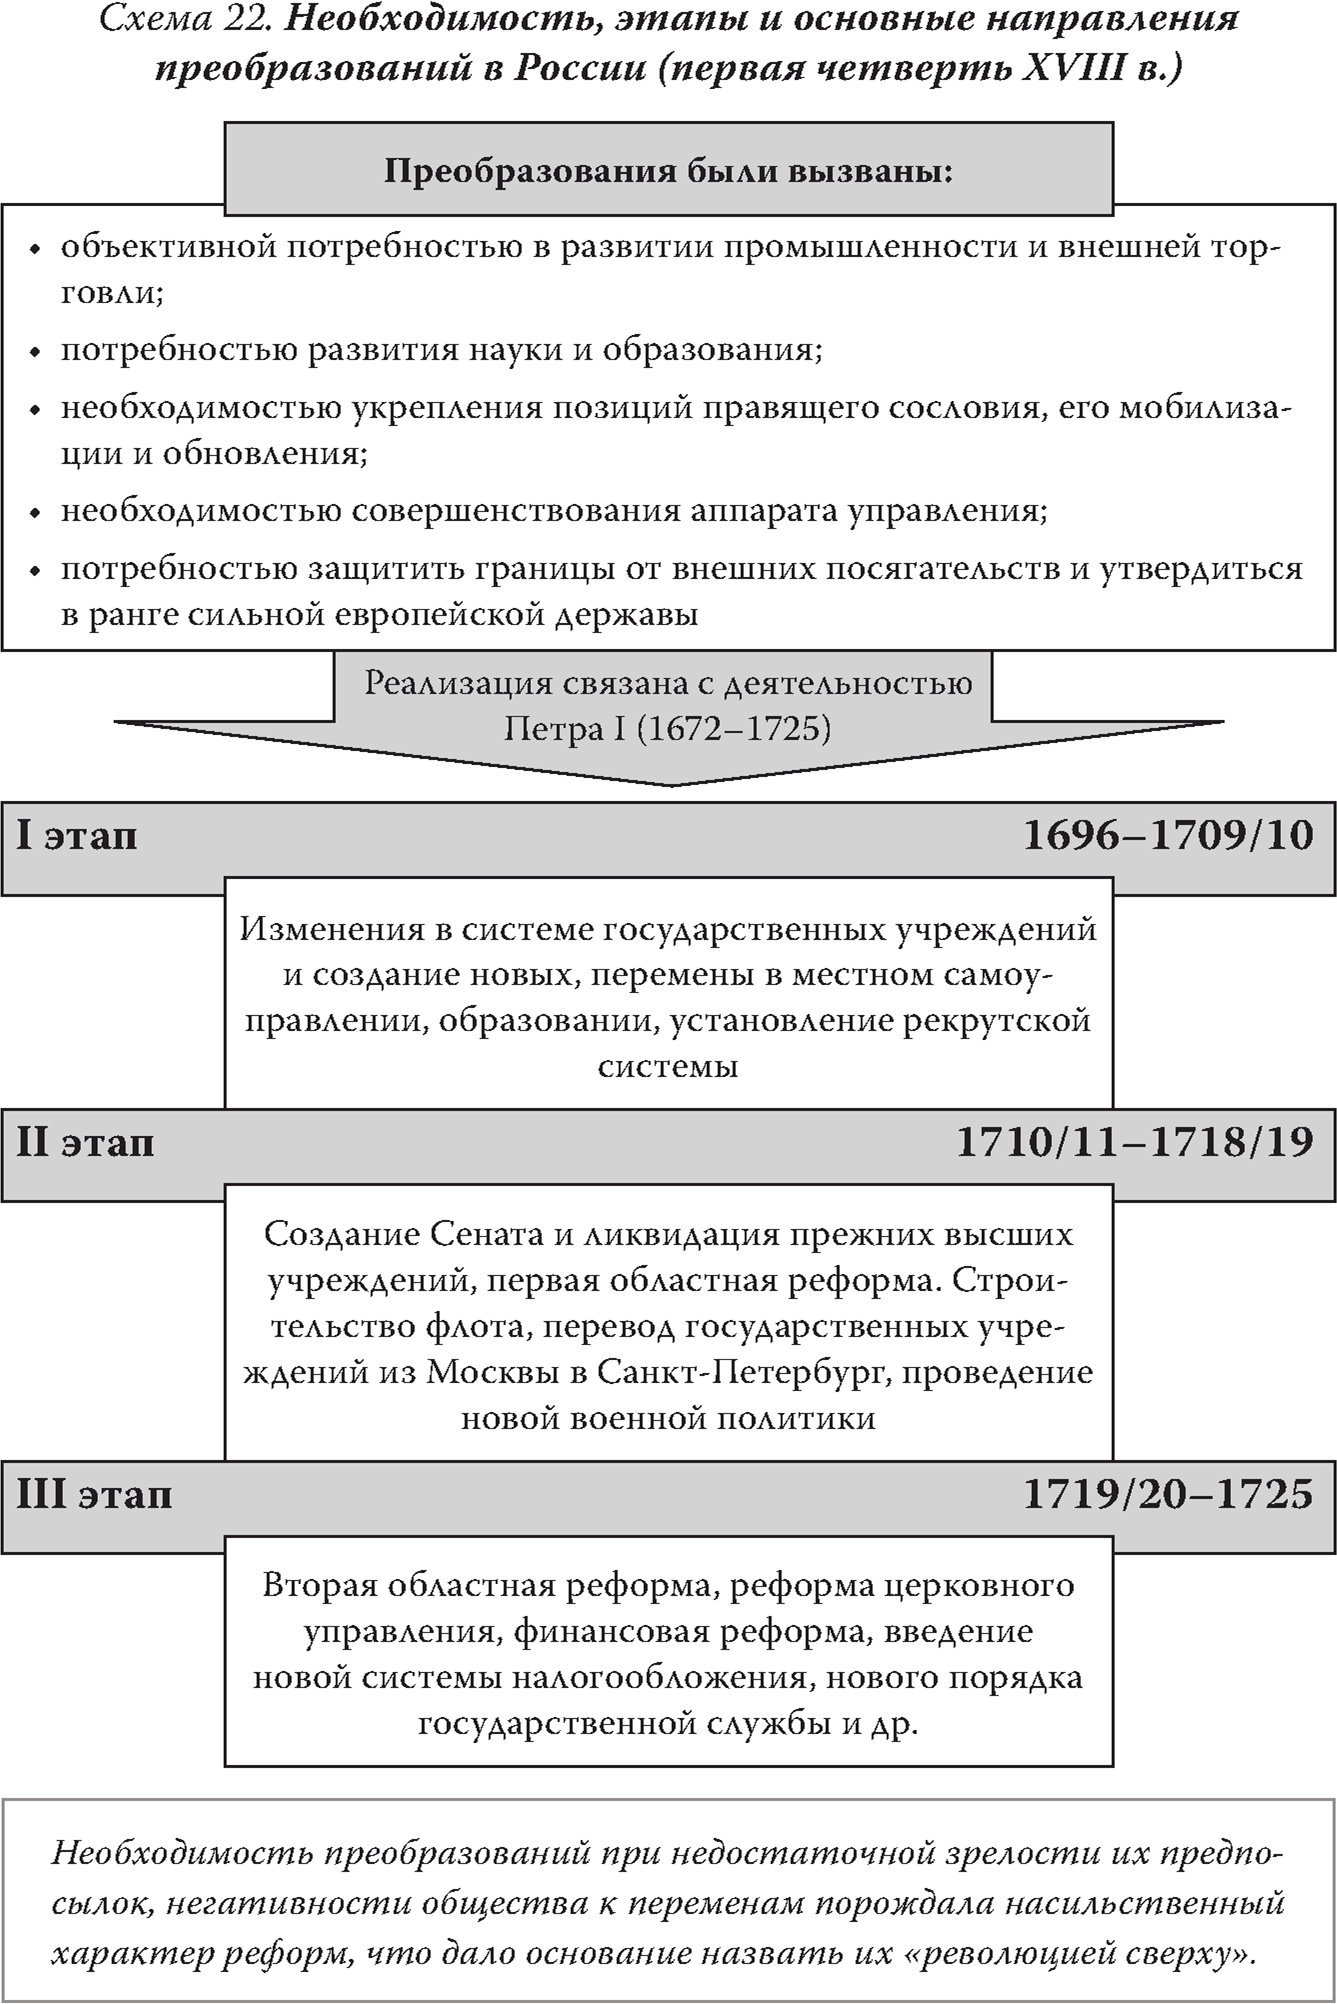 Необходимость, этапы и основные направления преобразований в России (первая четверть XVIII в.)